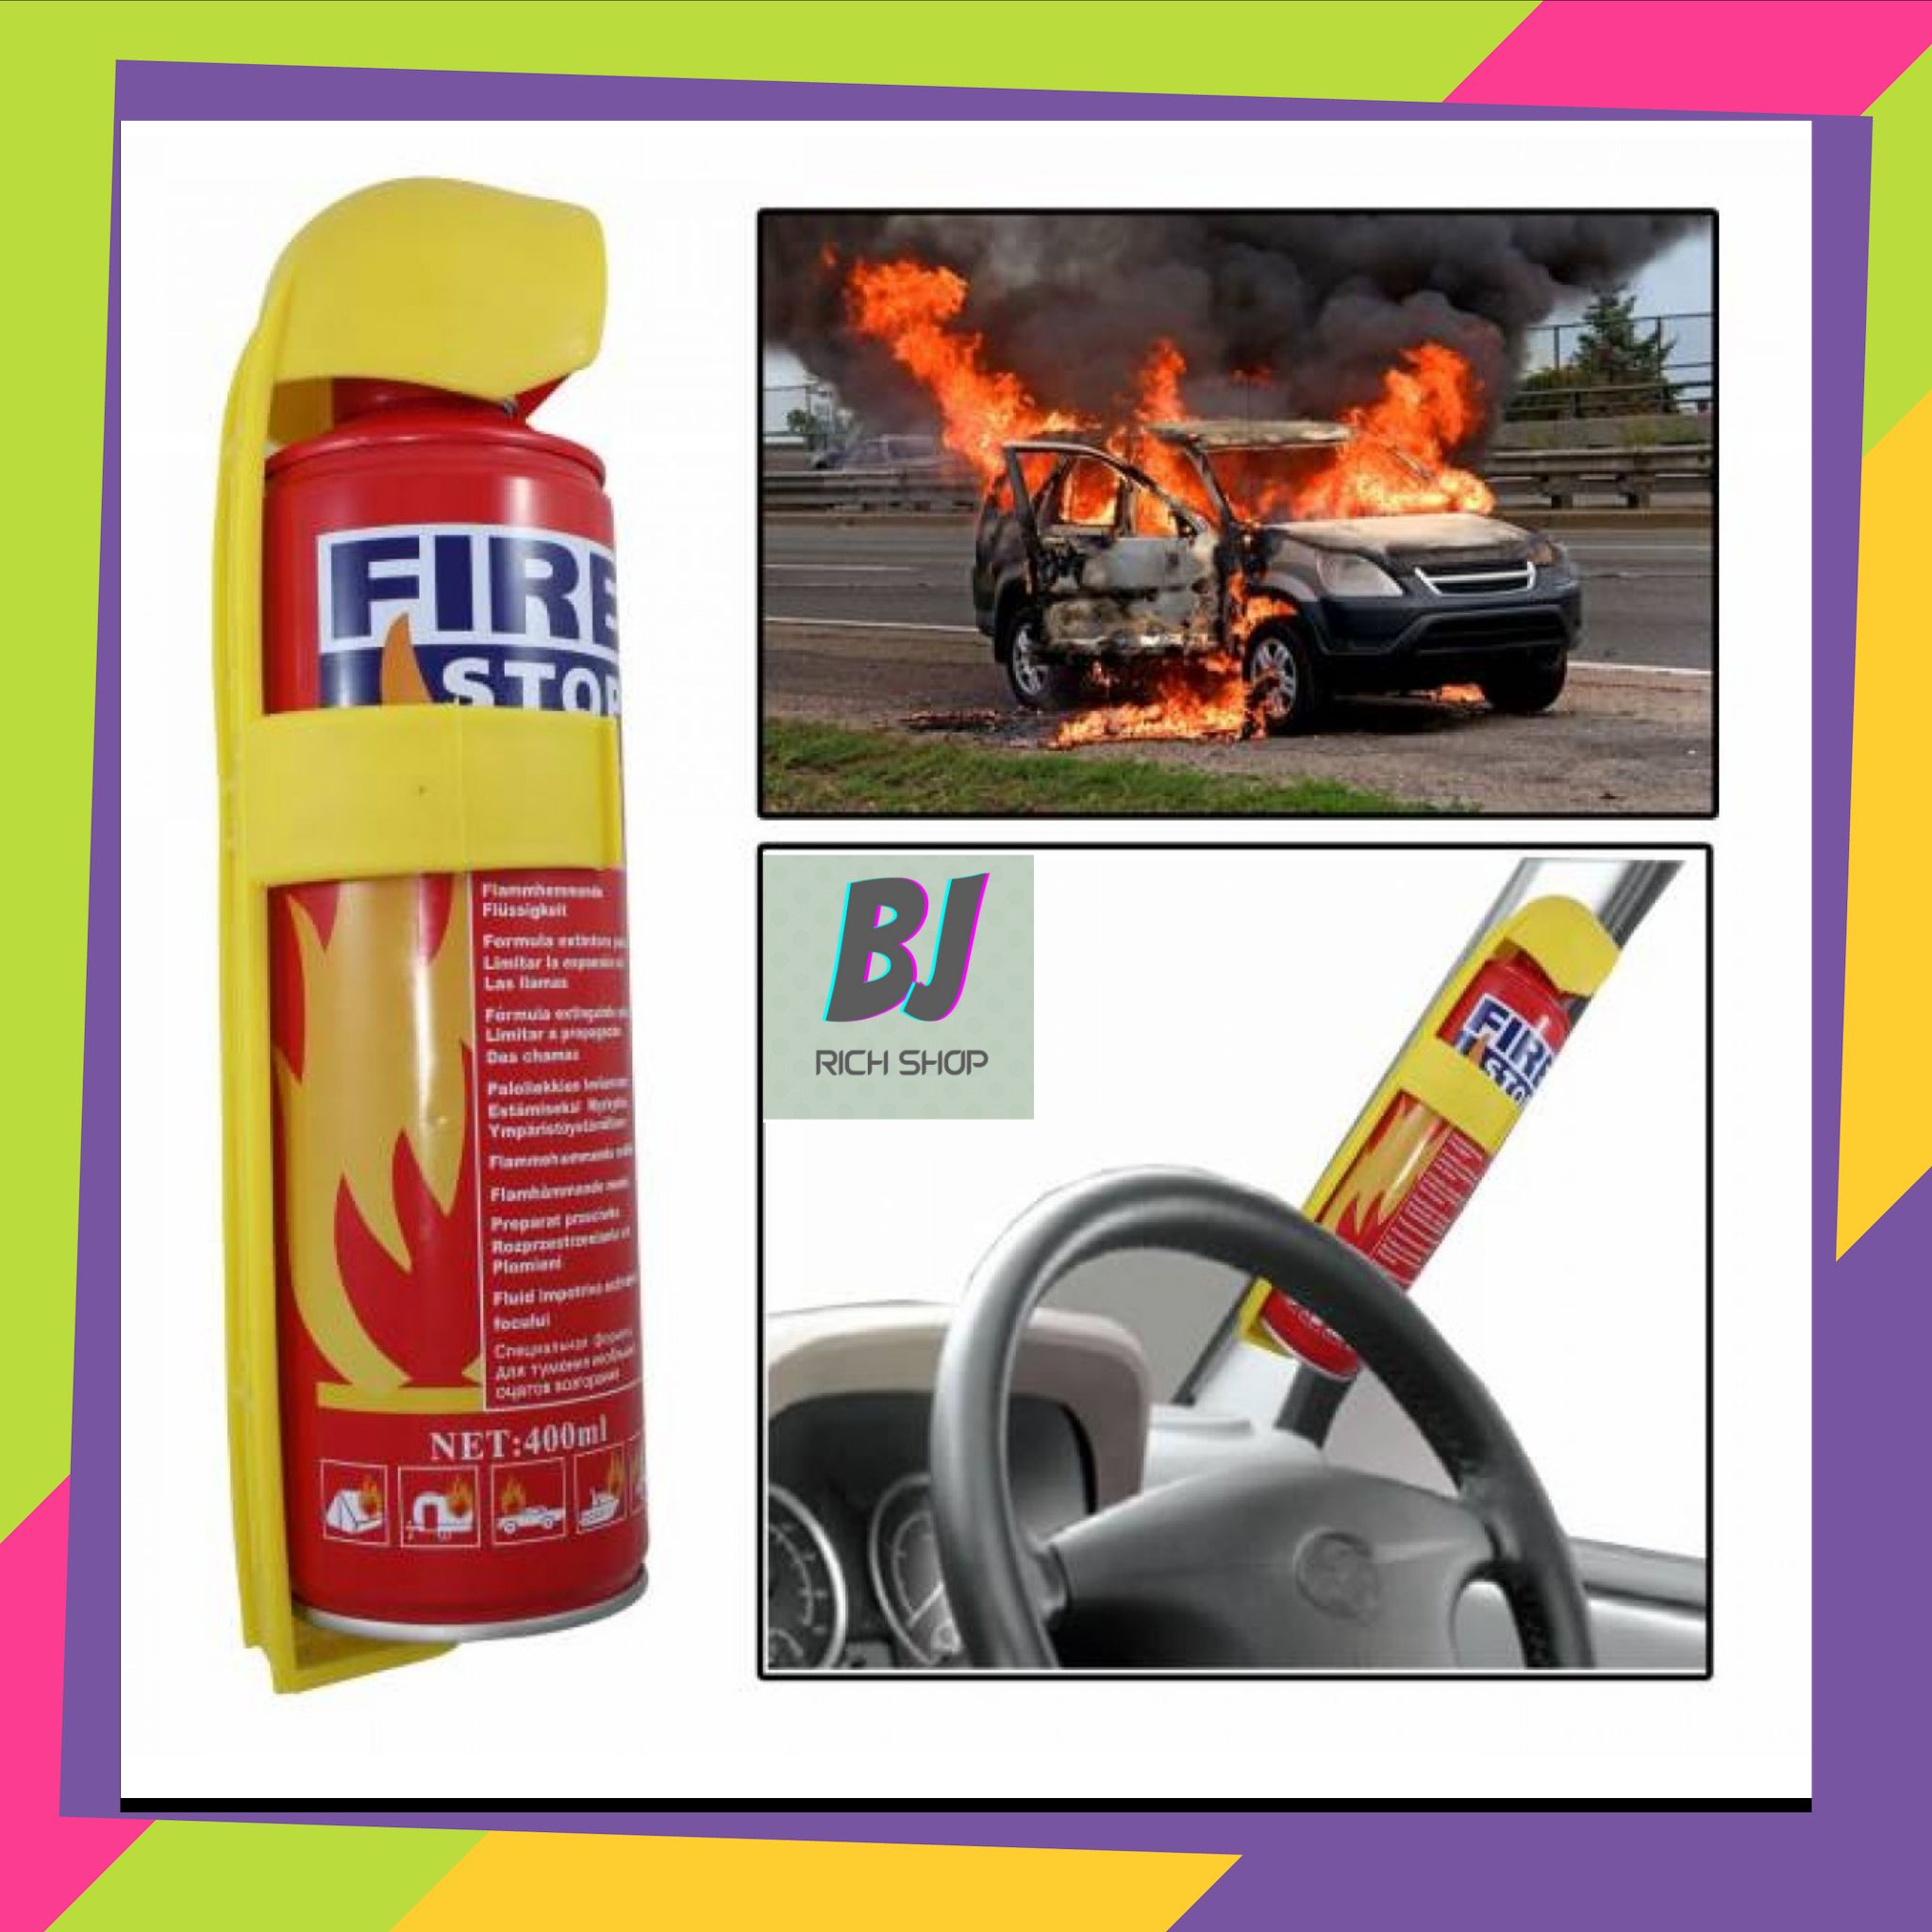 สเปรย์ดับเพลิงในรถยนต์ 1000 CC ถังดับเพลิง1000 ซีซี สเปรย์ดับเพลิง สเปรย์ดับเพลิงในรถ เครืองดับเพลิงในรถยนต์ สเปย์ดับเพลิงแบบพกพา By bjrichshop